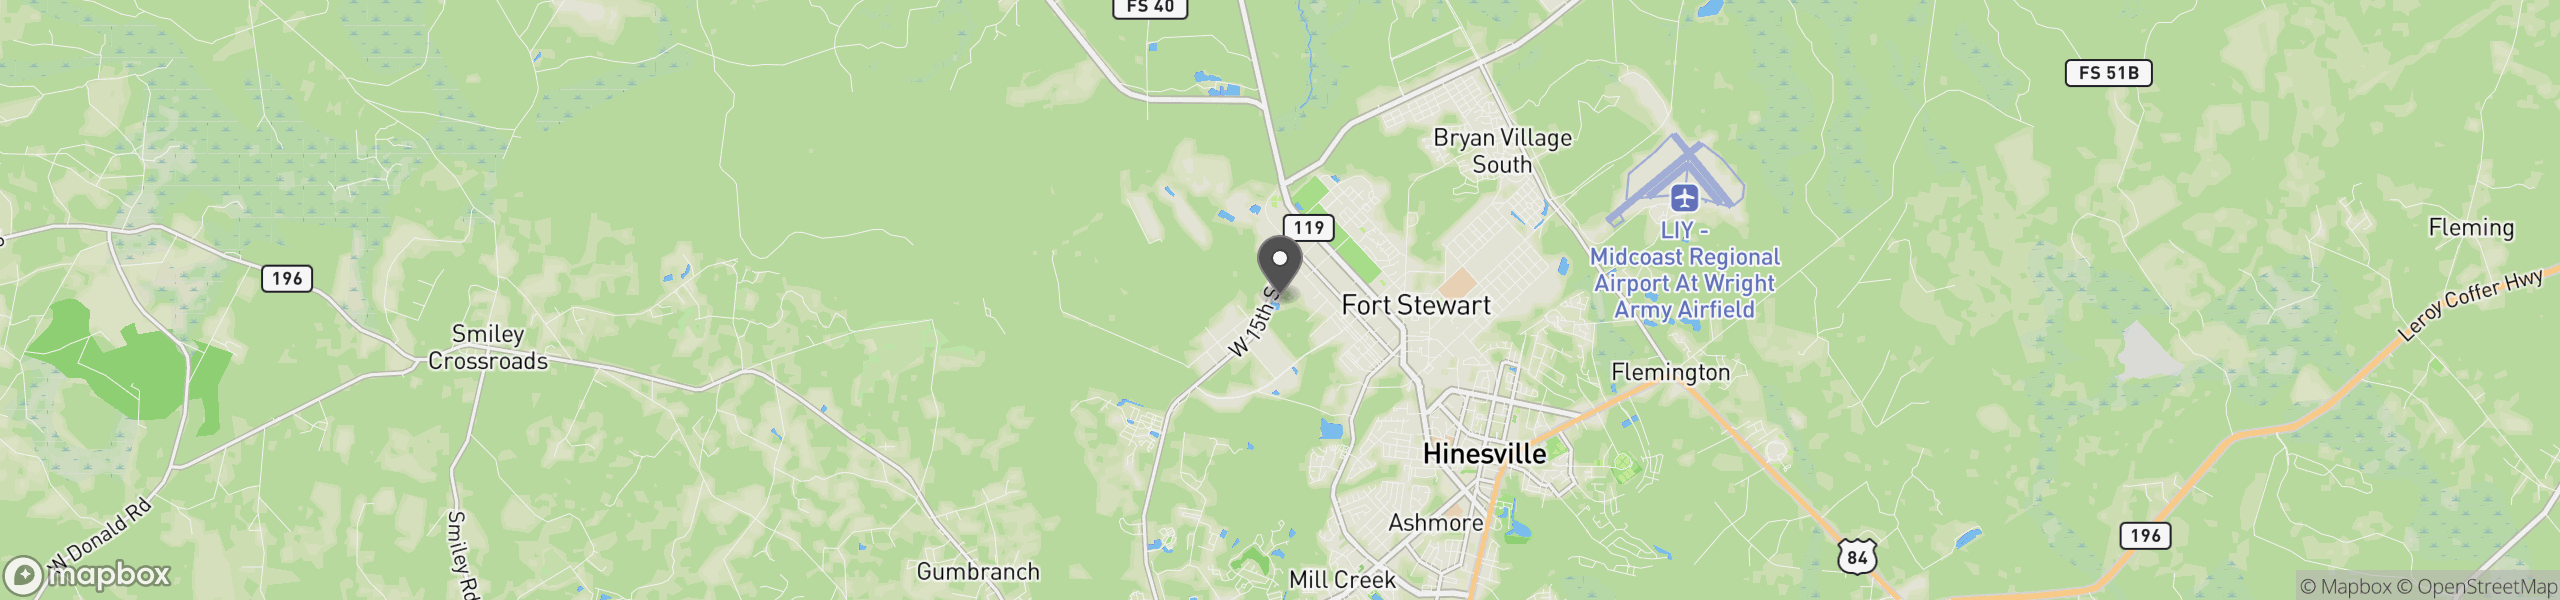 Fort Stewart, GA 31314